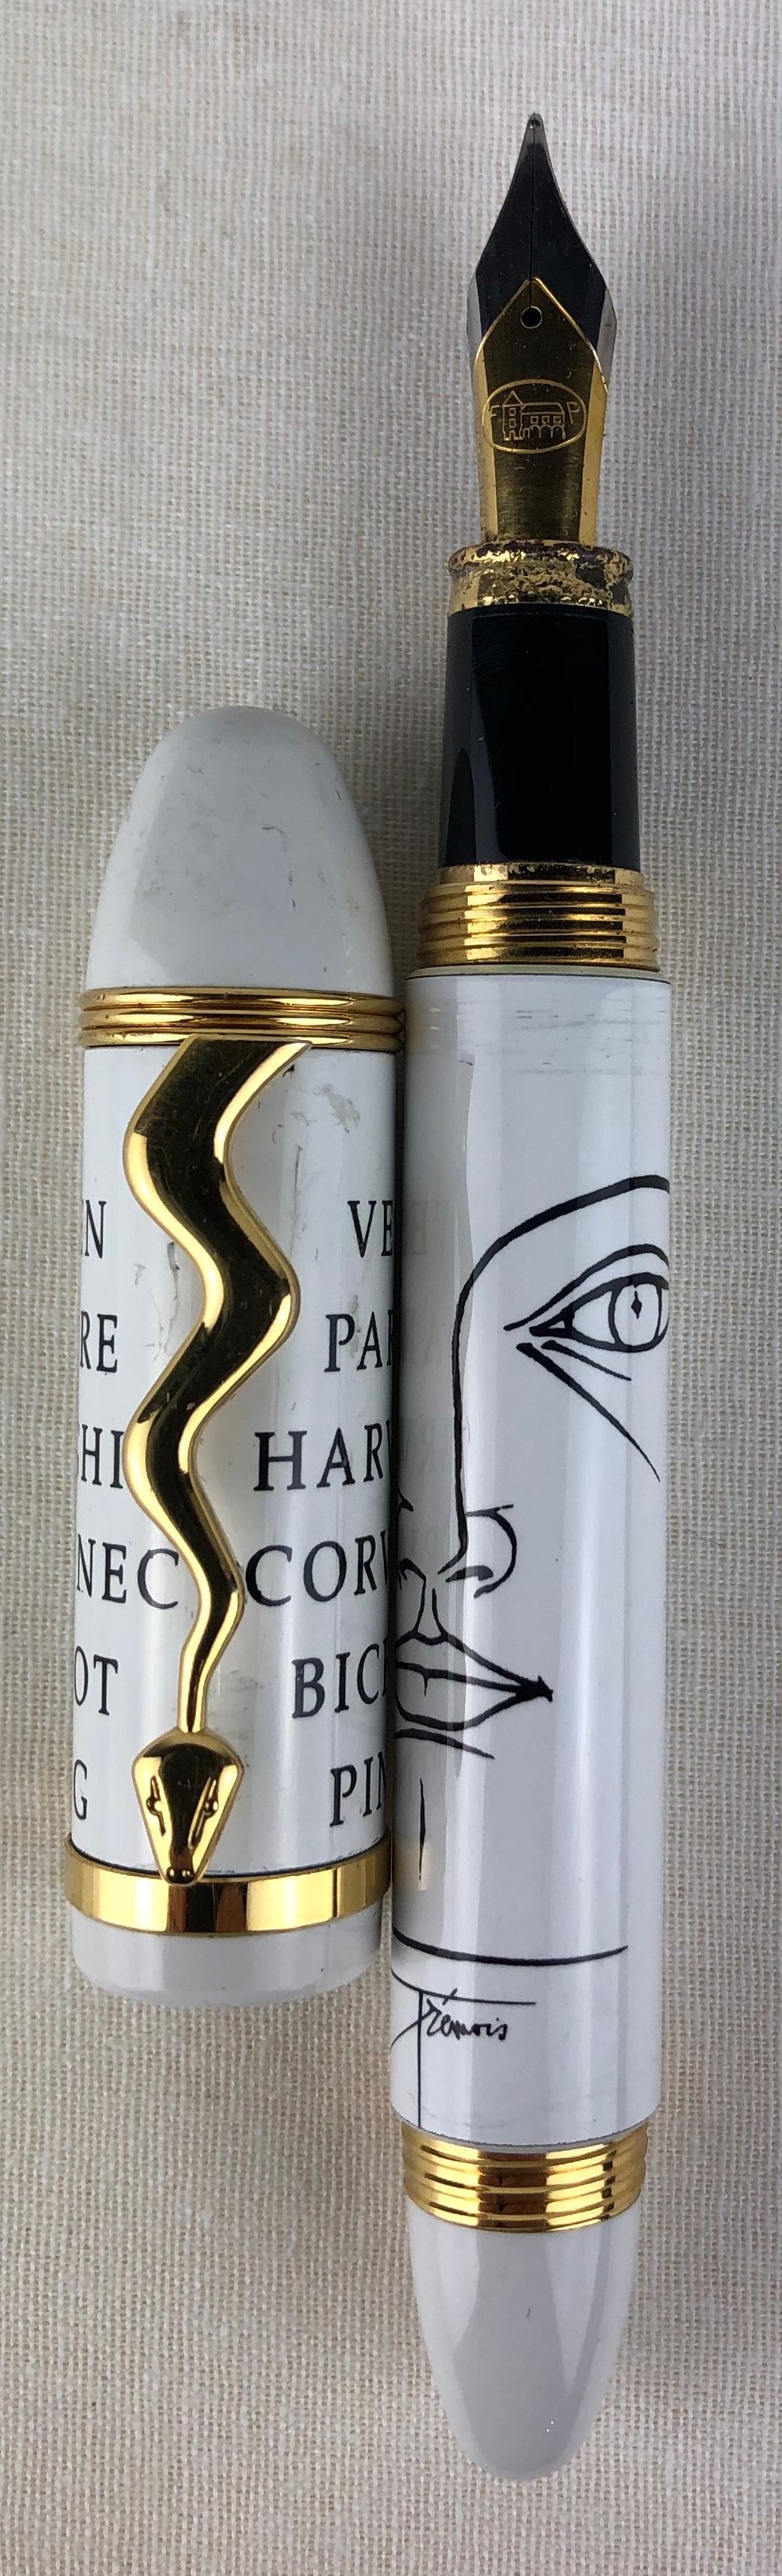 Füllfederhalter und Kugelschreiber des Künstlers Trémois (Selten!). Dieser Füller wird von denselben Herstellern wie die Montblanc-Füller produziert. Goldfeder. Weiß lackiert und vergoldet. Modell Himalaya. Erste Ausgabe. Nummeriert. Limitierte